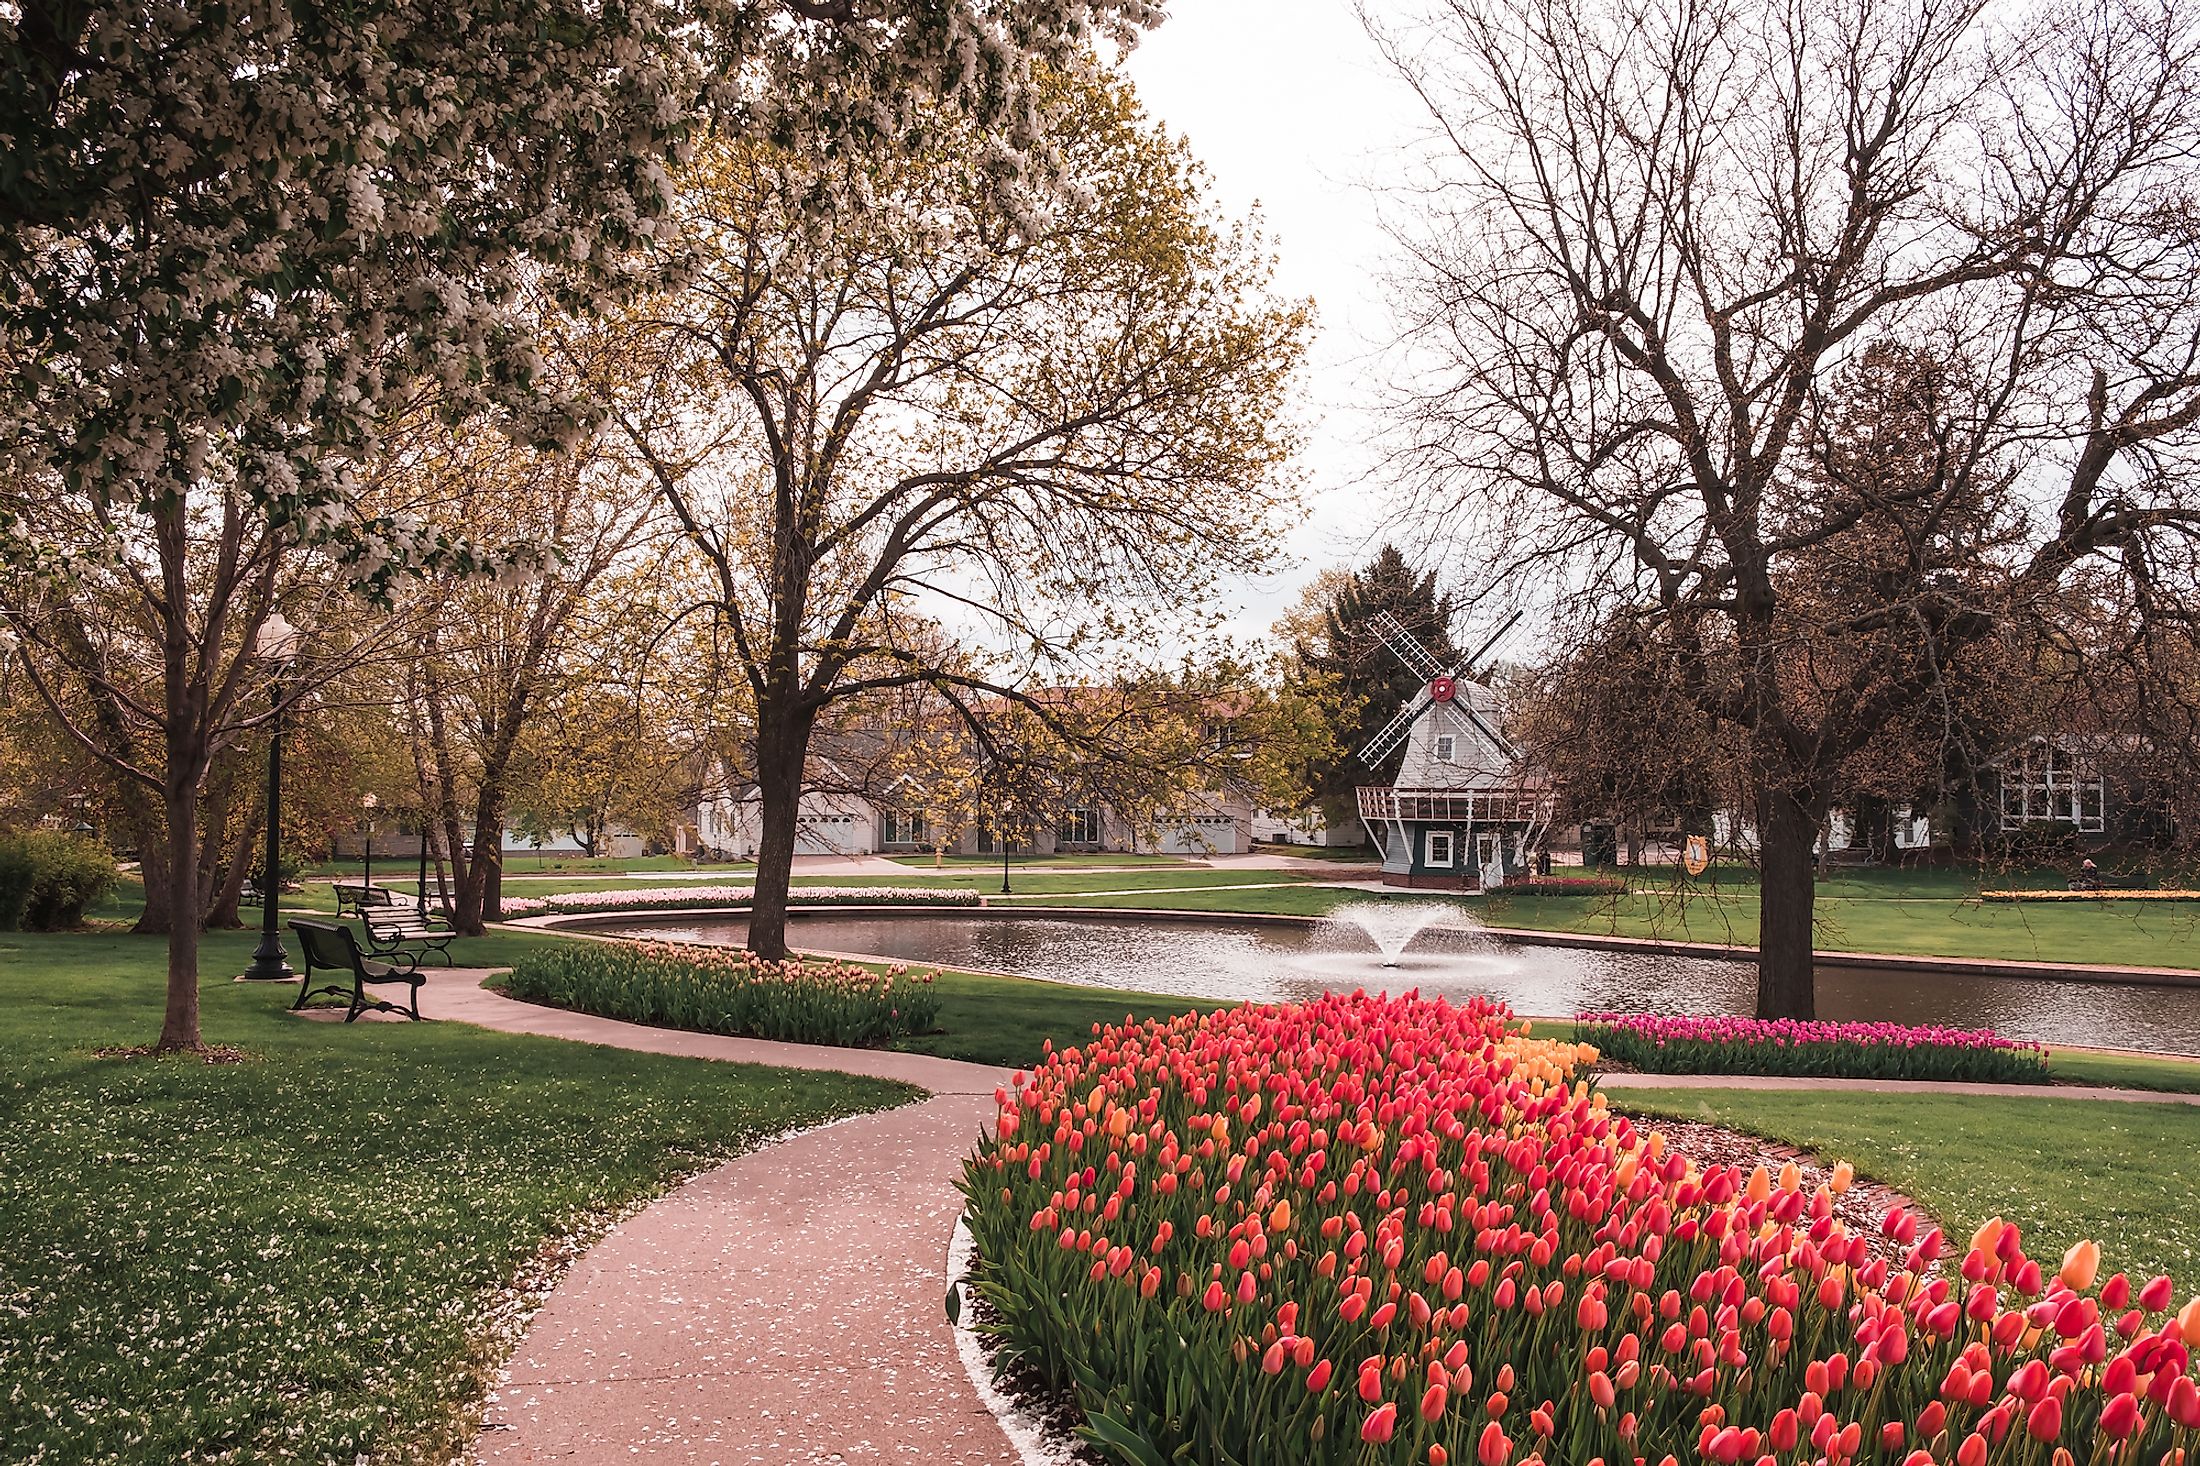 Pathway lined with beds of Tulips in Sunken Gardens Park, Pella, Iowa.